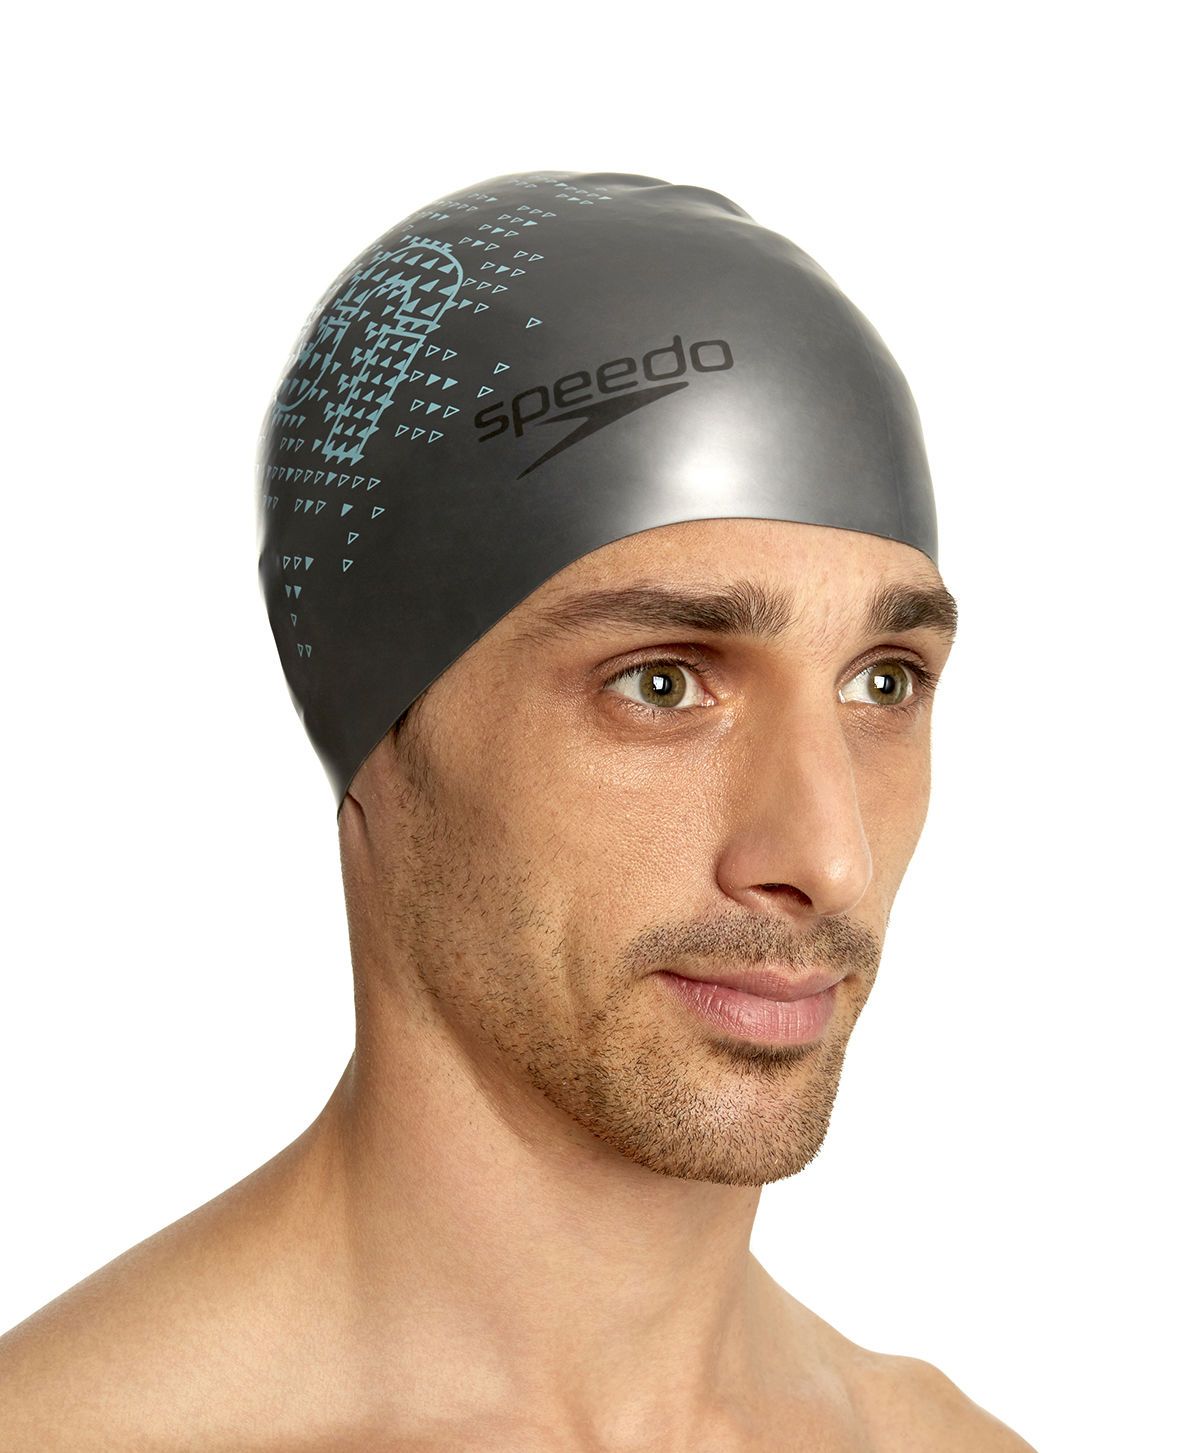  Speedo - Nón Bơi Người Lớn Reversible Monogram Silicone (Xám) Chống Thấm Nước 